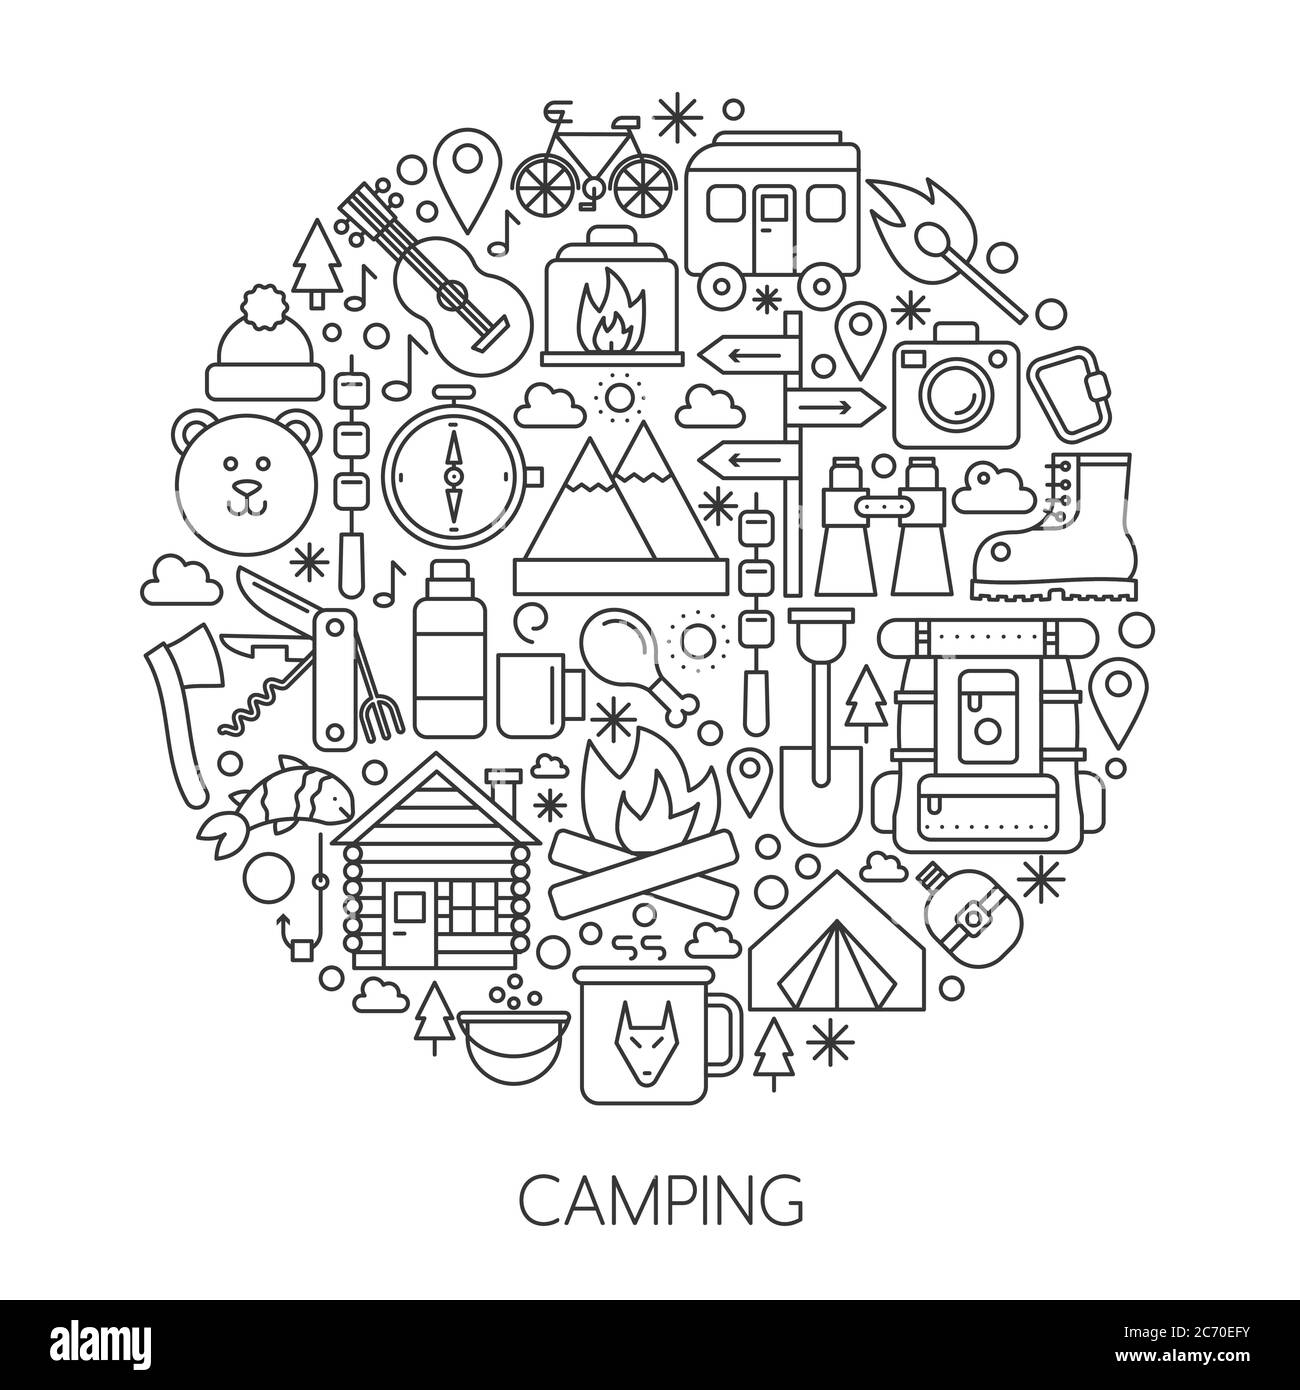 Camping Herramientas De Senderismo Y Equipos En C Rculo L Nea De